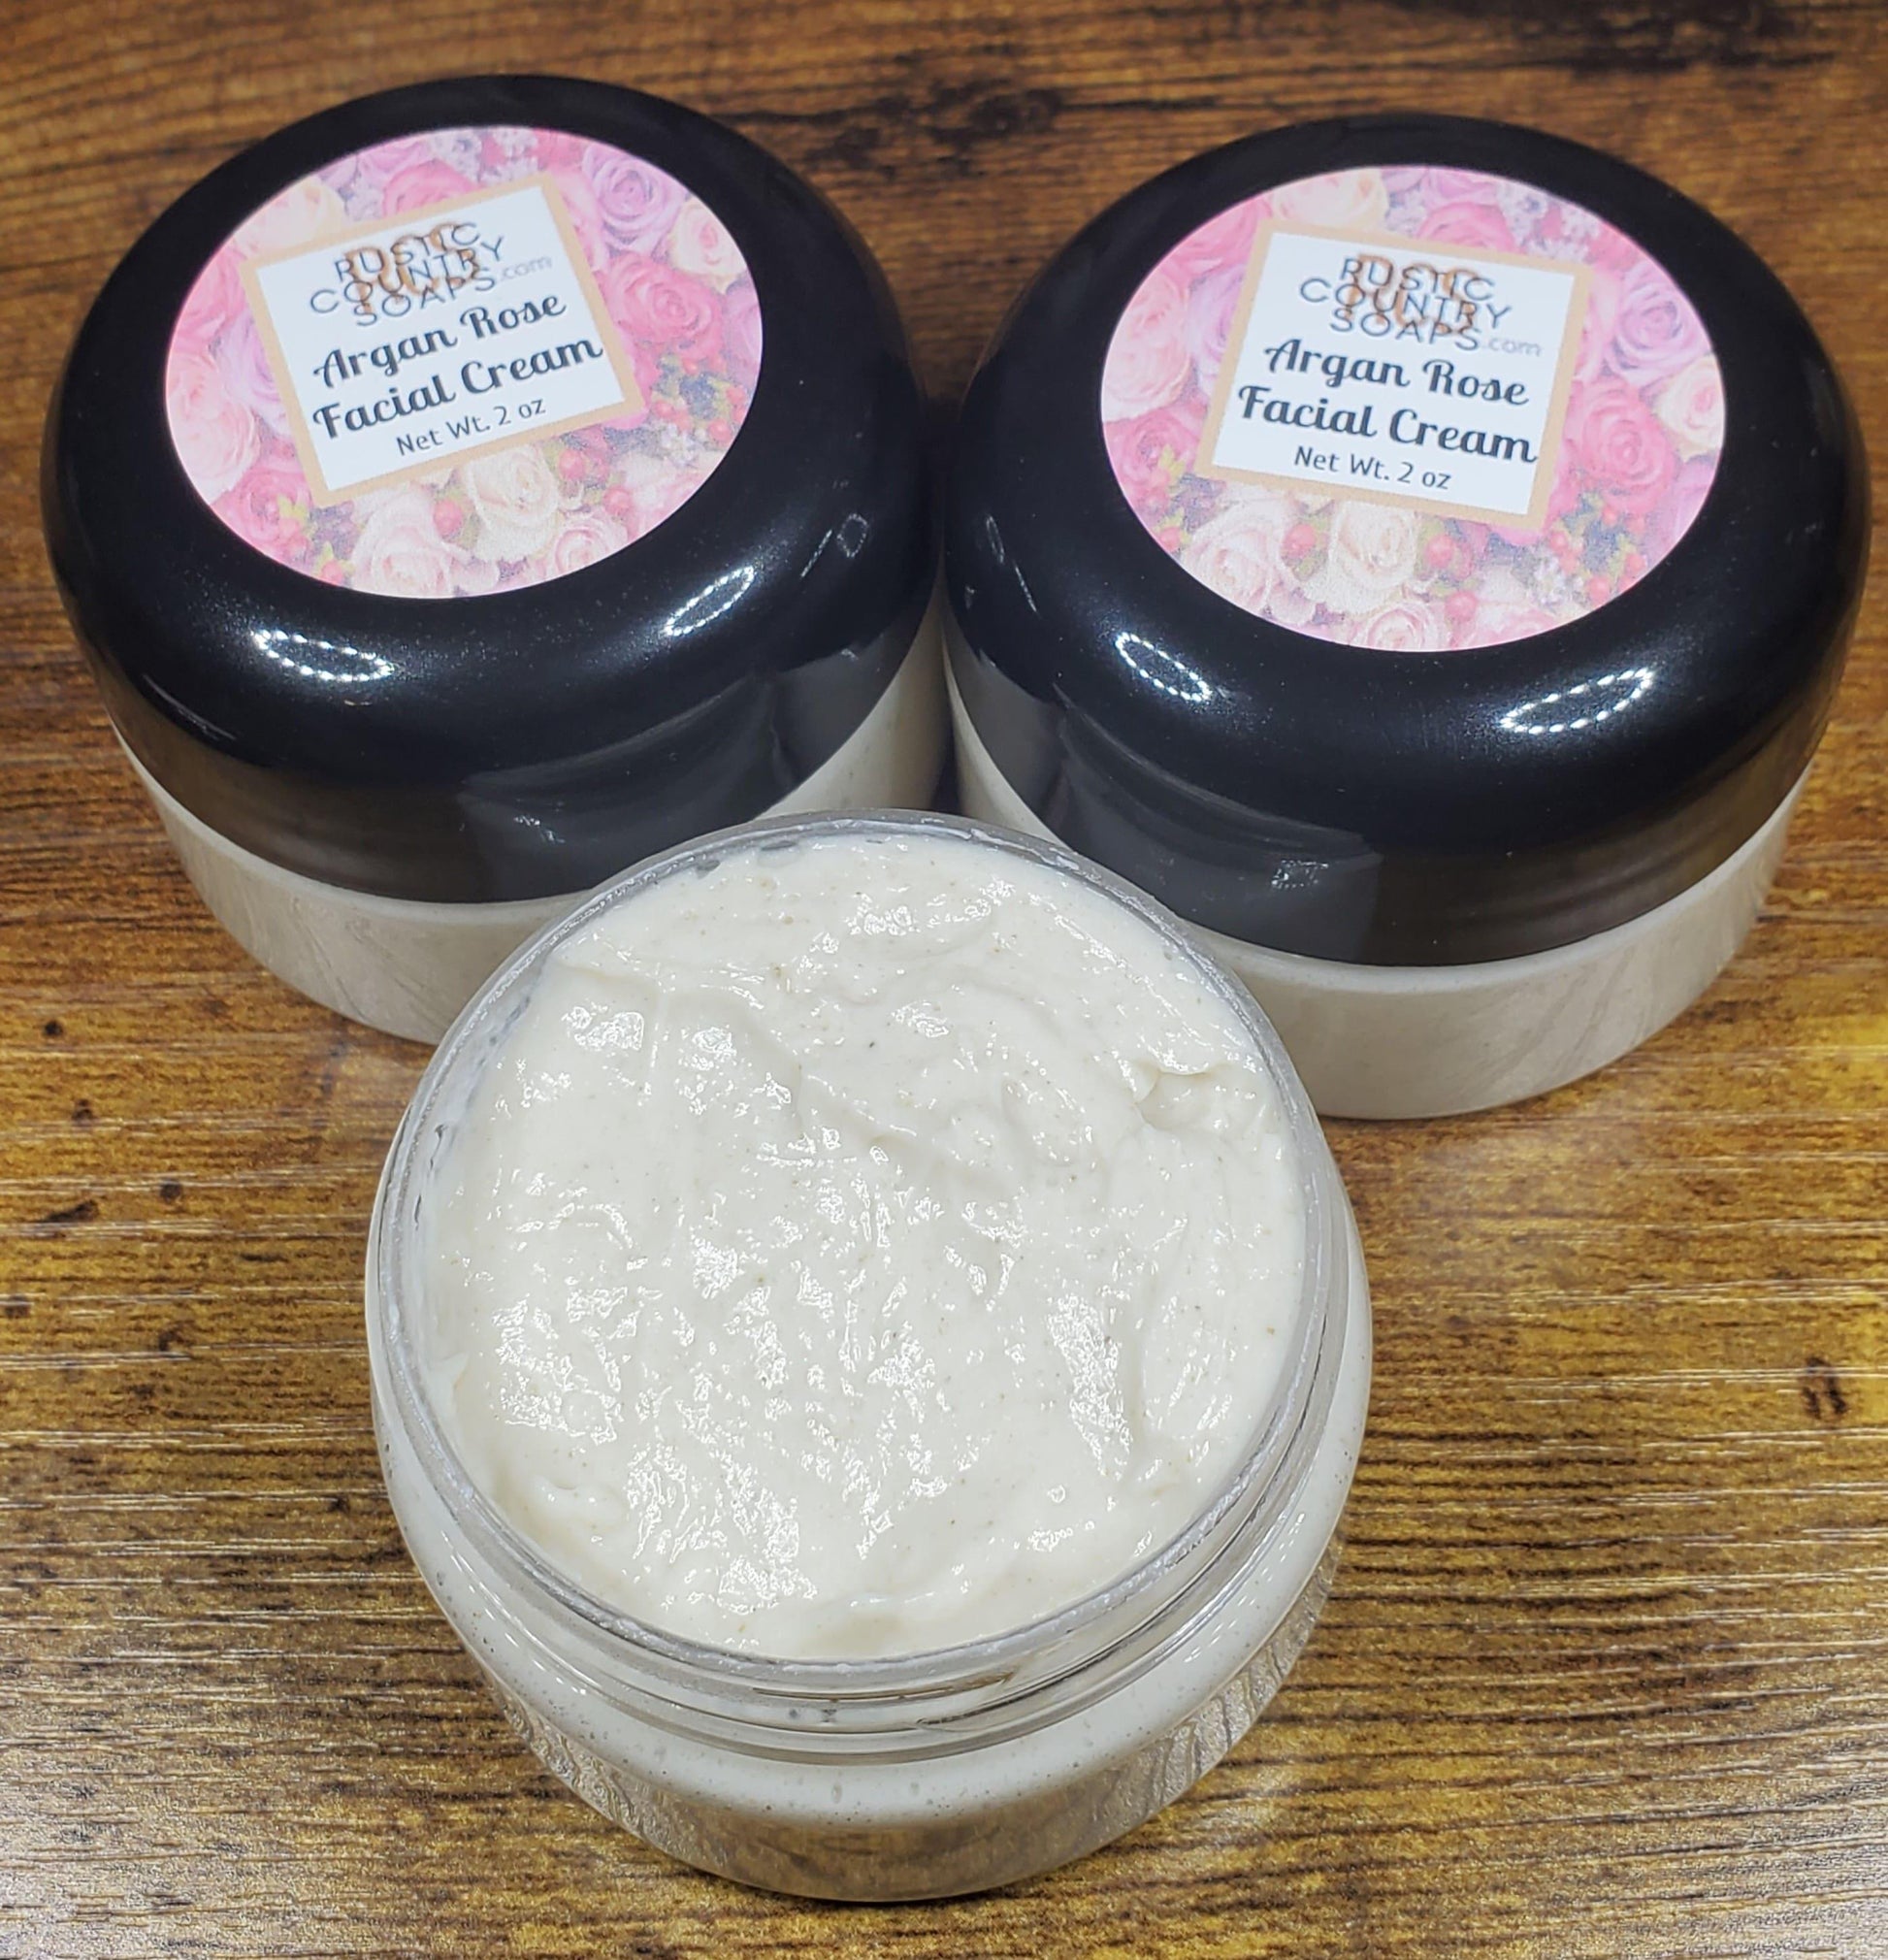 Argan Rose Facial Cream - Rustic Country Soaps & More